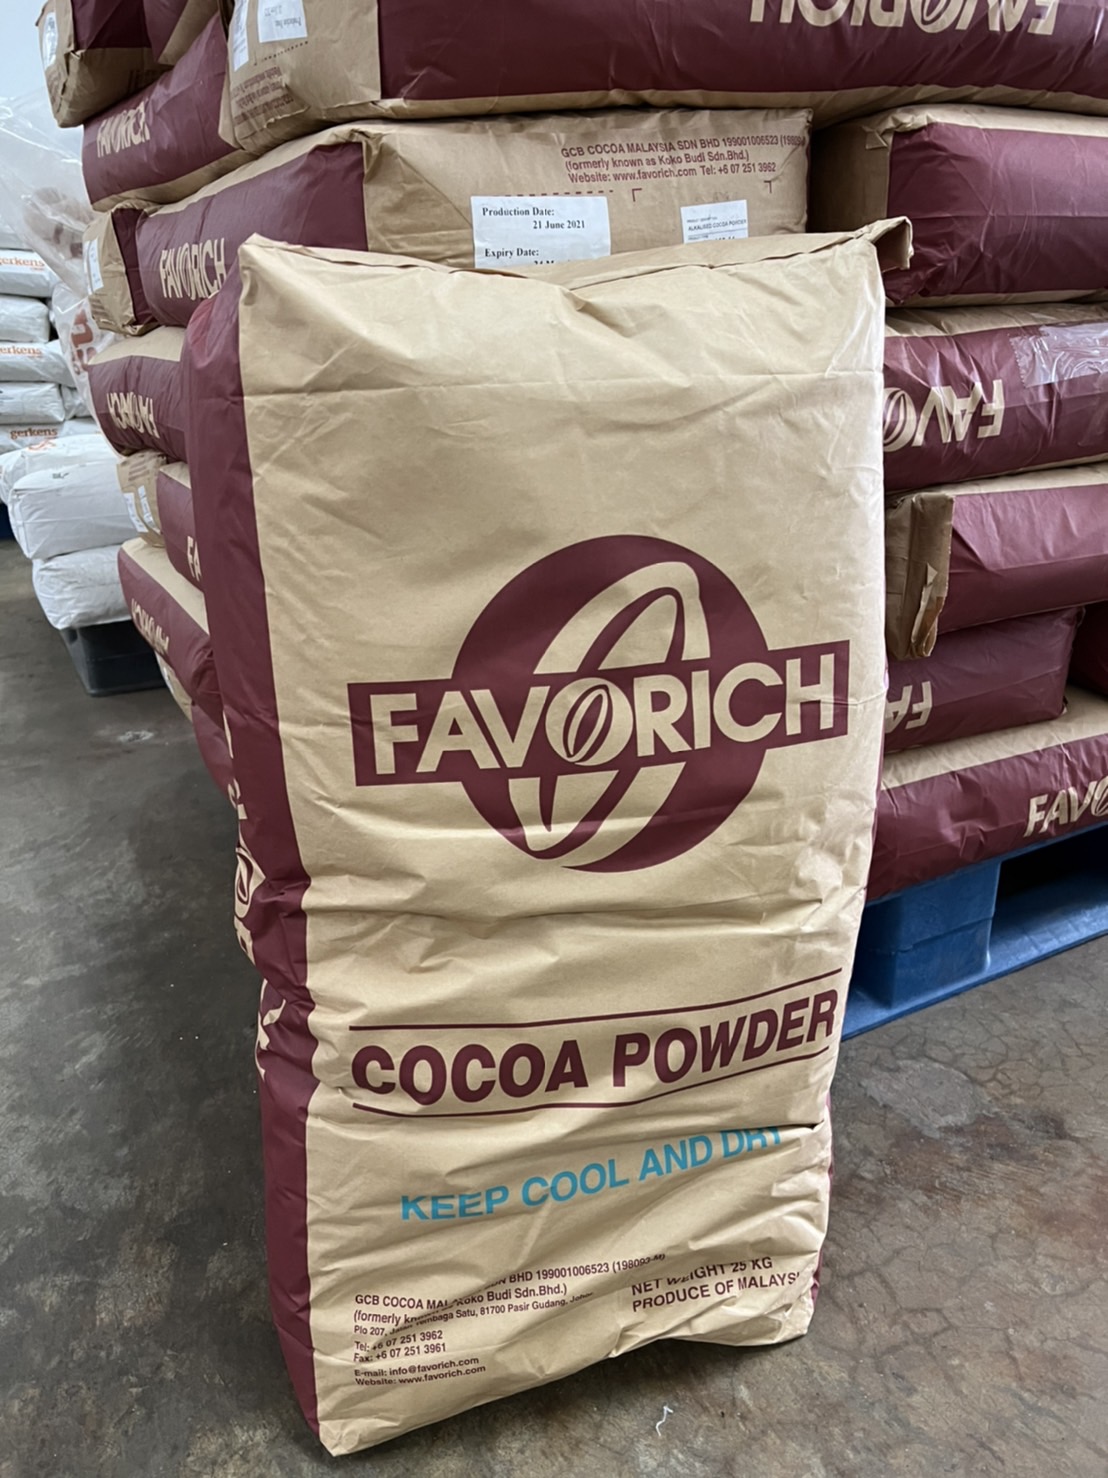 โกโก้ผง (Cocoa Powder) รหัส: GP250-11 ยี่ห้อ Favorich 25 กิโลกรัม